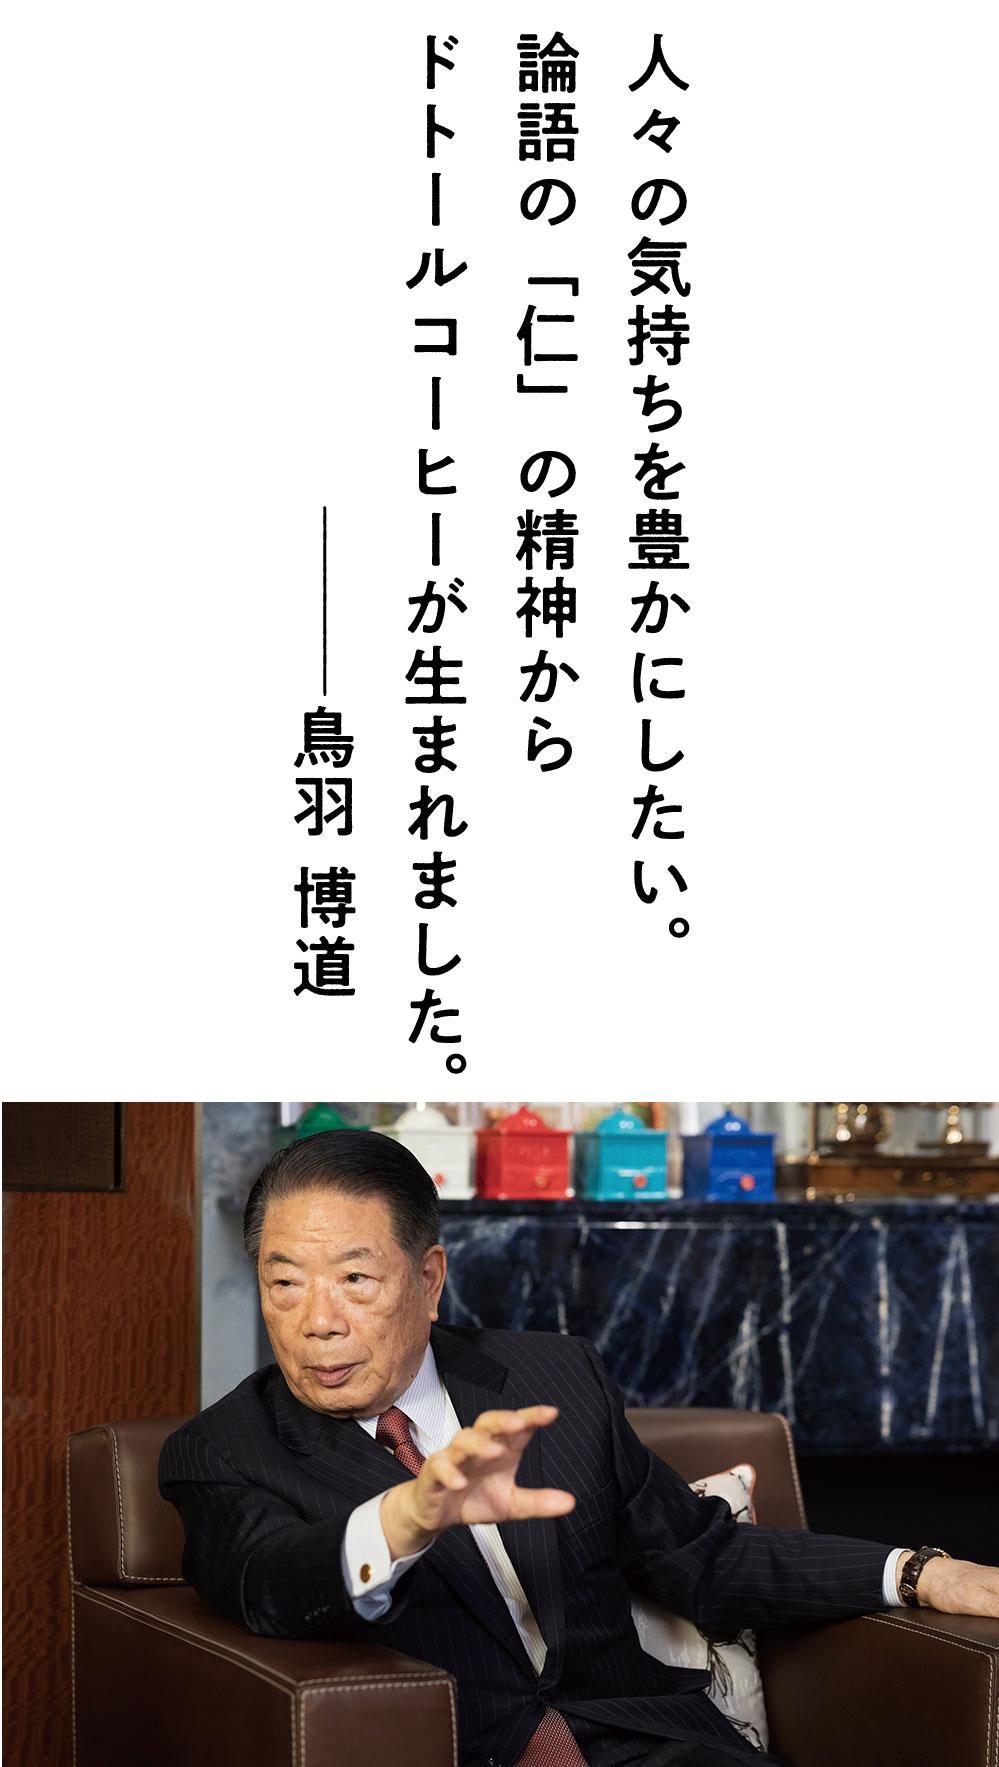 理事長対談 vol.24「水戸英則×鳥羽博道」